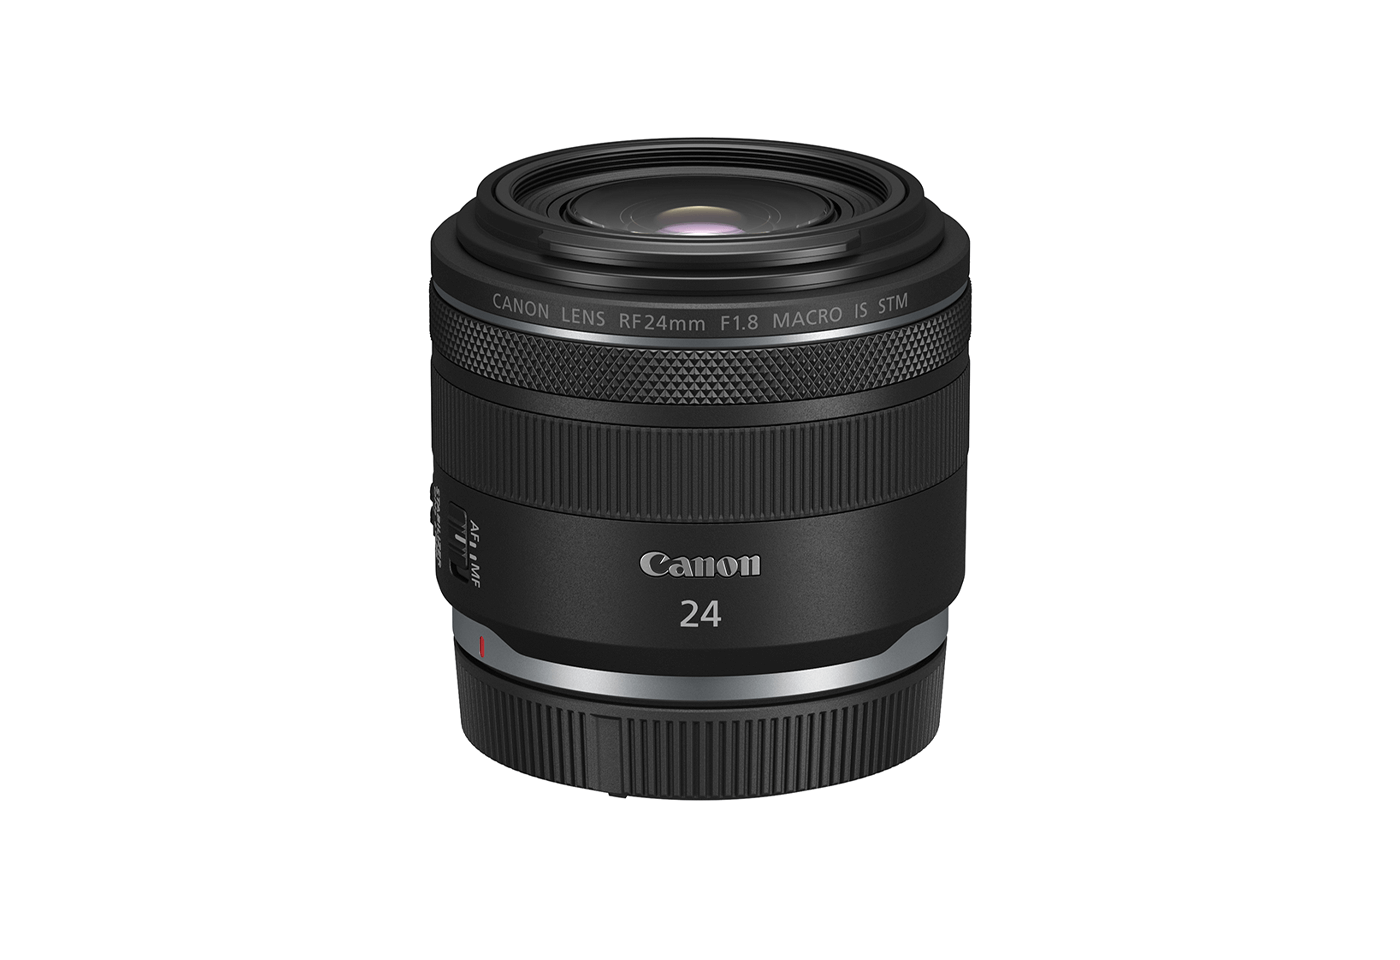 24mm lens